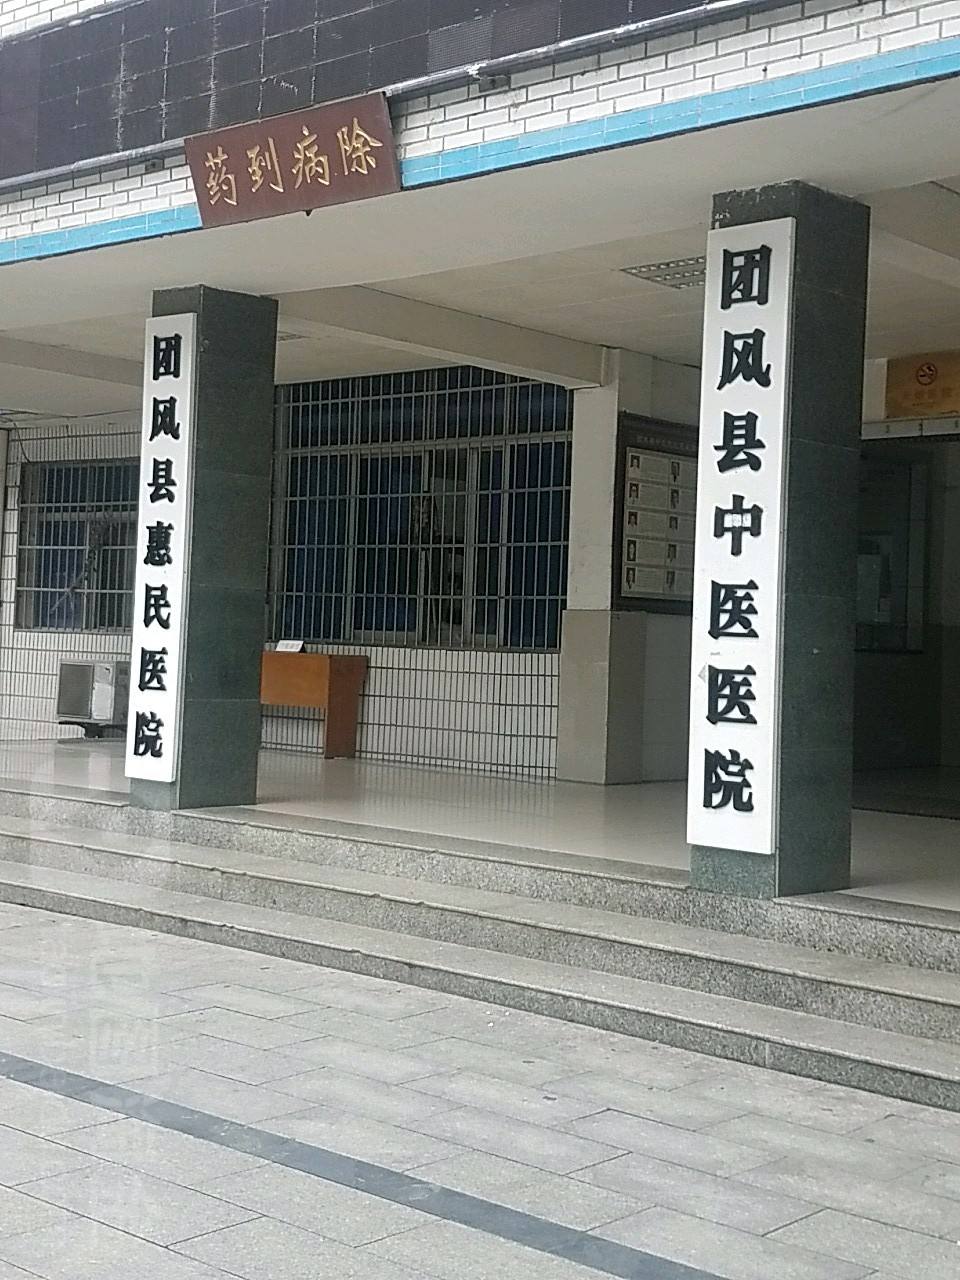 团风县中医医院污水处理设备采购及安装项目